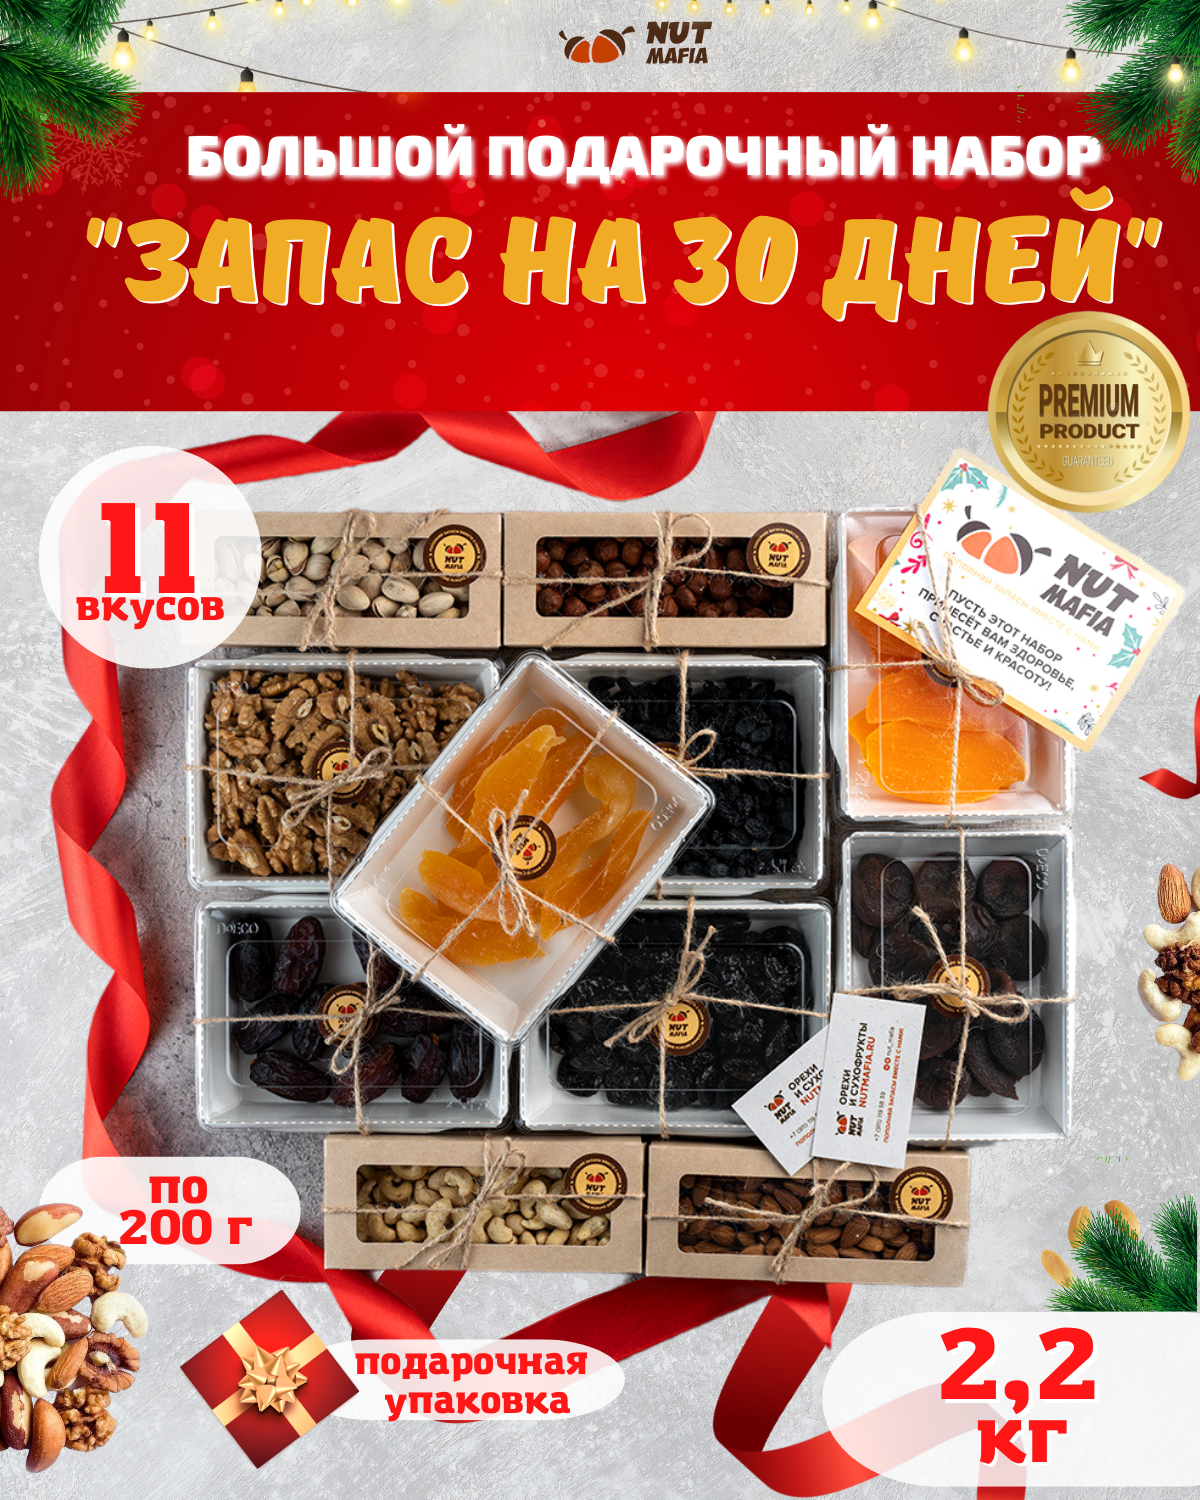 Большой Подарочный набор орехов, сухофруктов и цукат "Запас на 30 дней" весом 2,2 кг